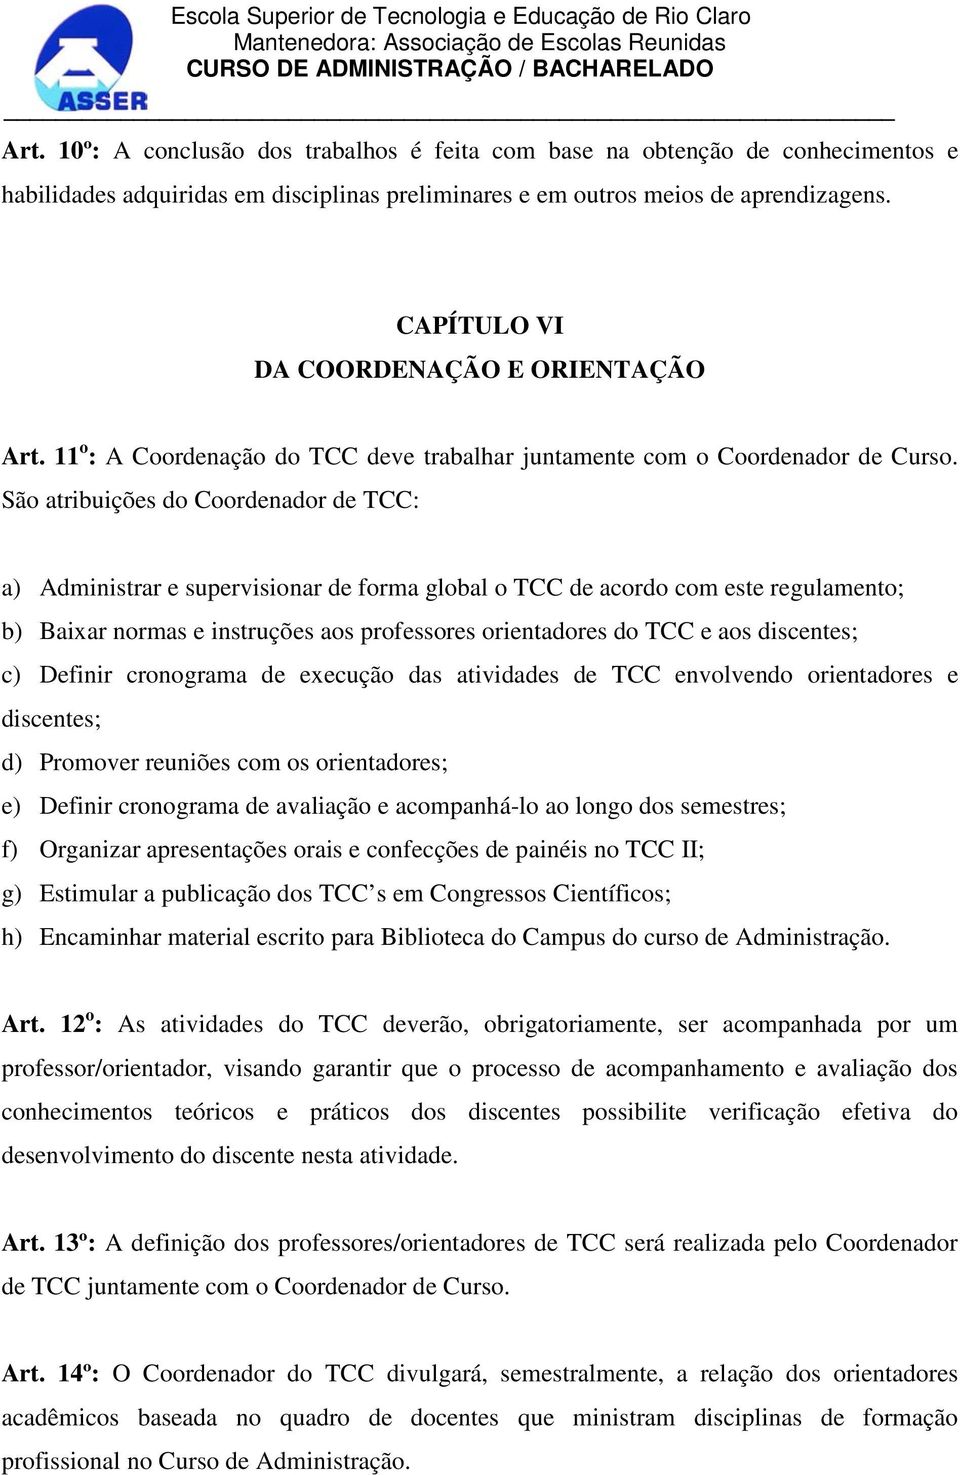 São atribuições do Coordenador de TCC: a) Administrar e supervisionar de forma global o TCC de acordo com este regulamento; b) Baixar normas e instruções aos professores orientadores do TCC e aos